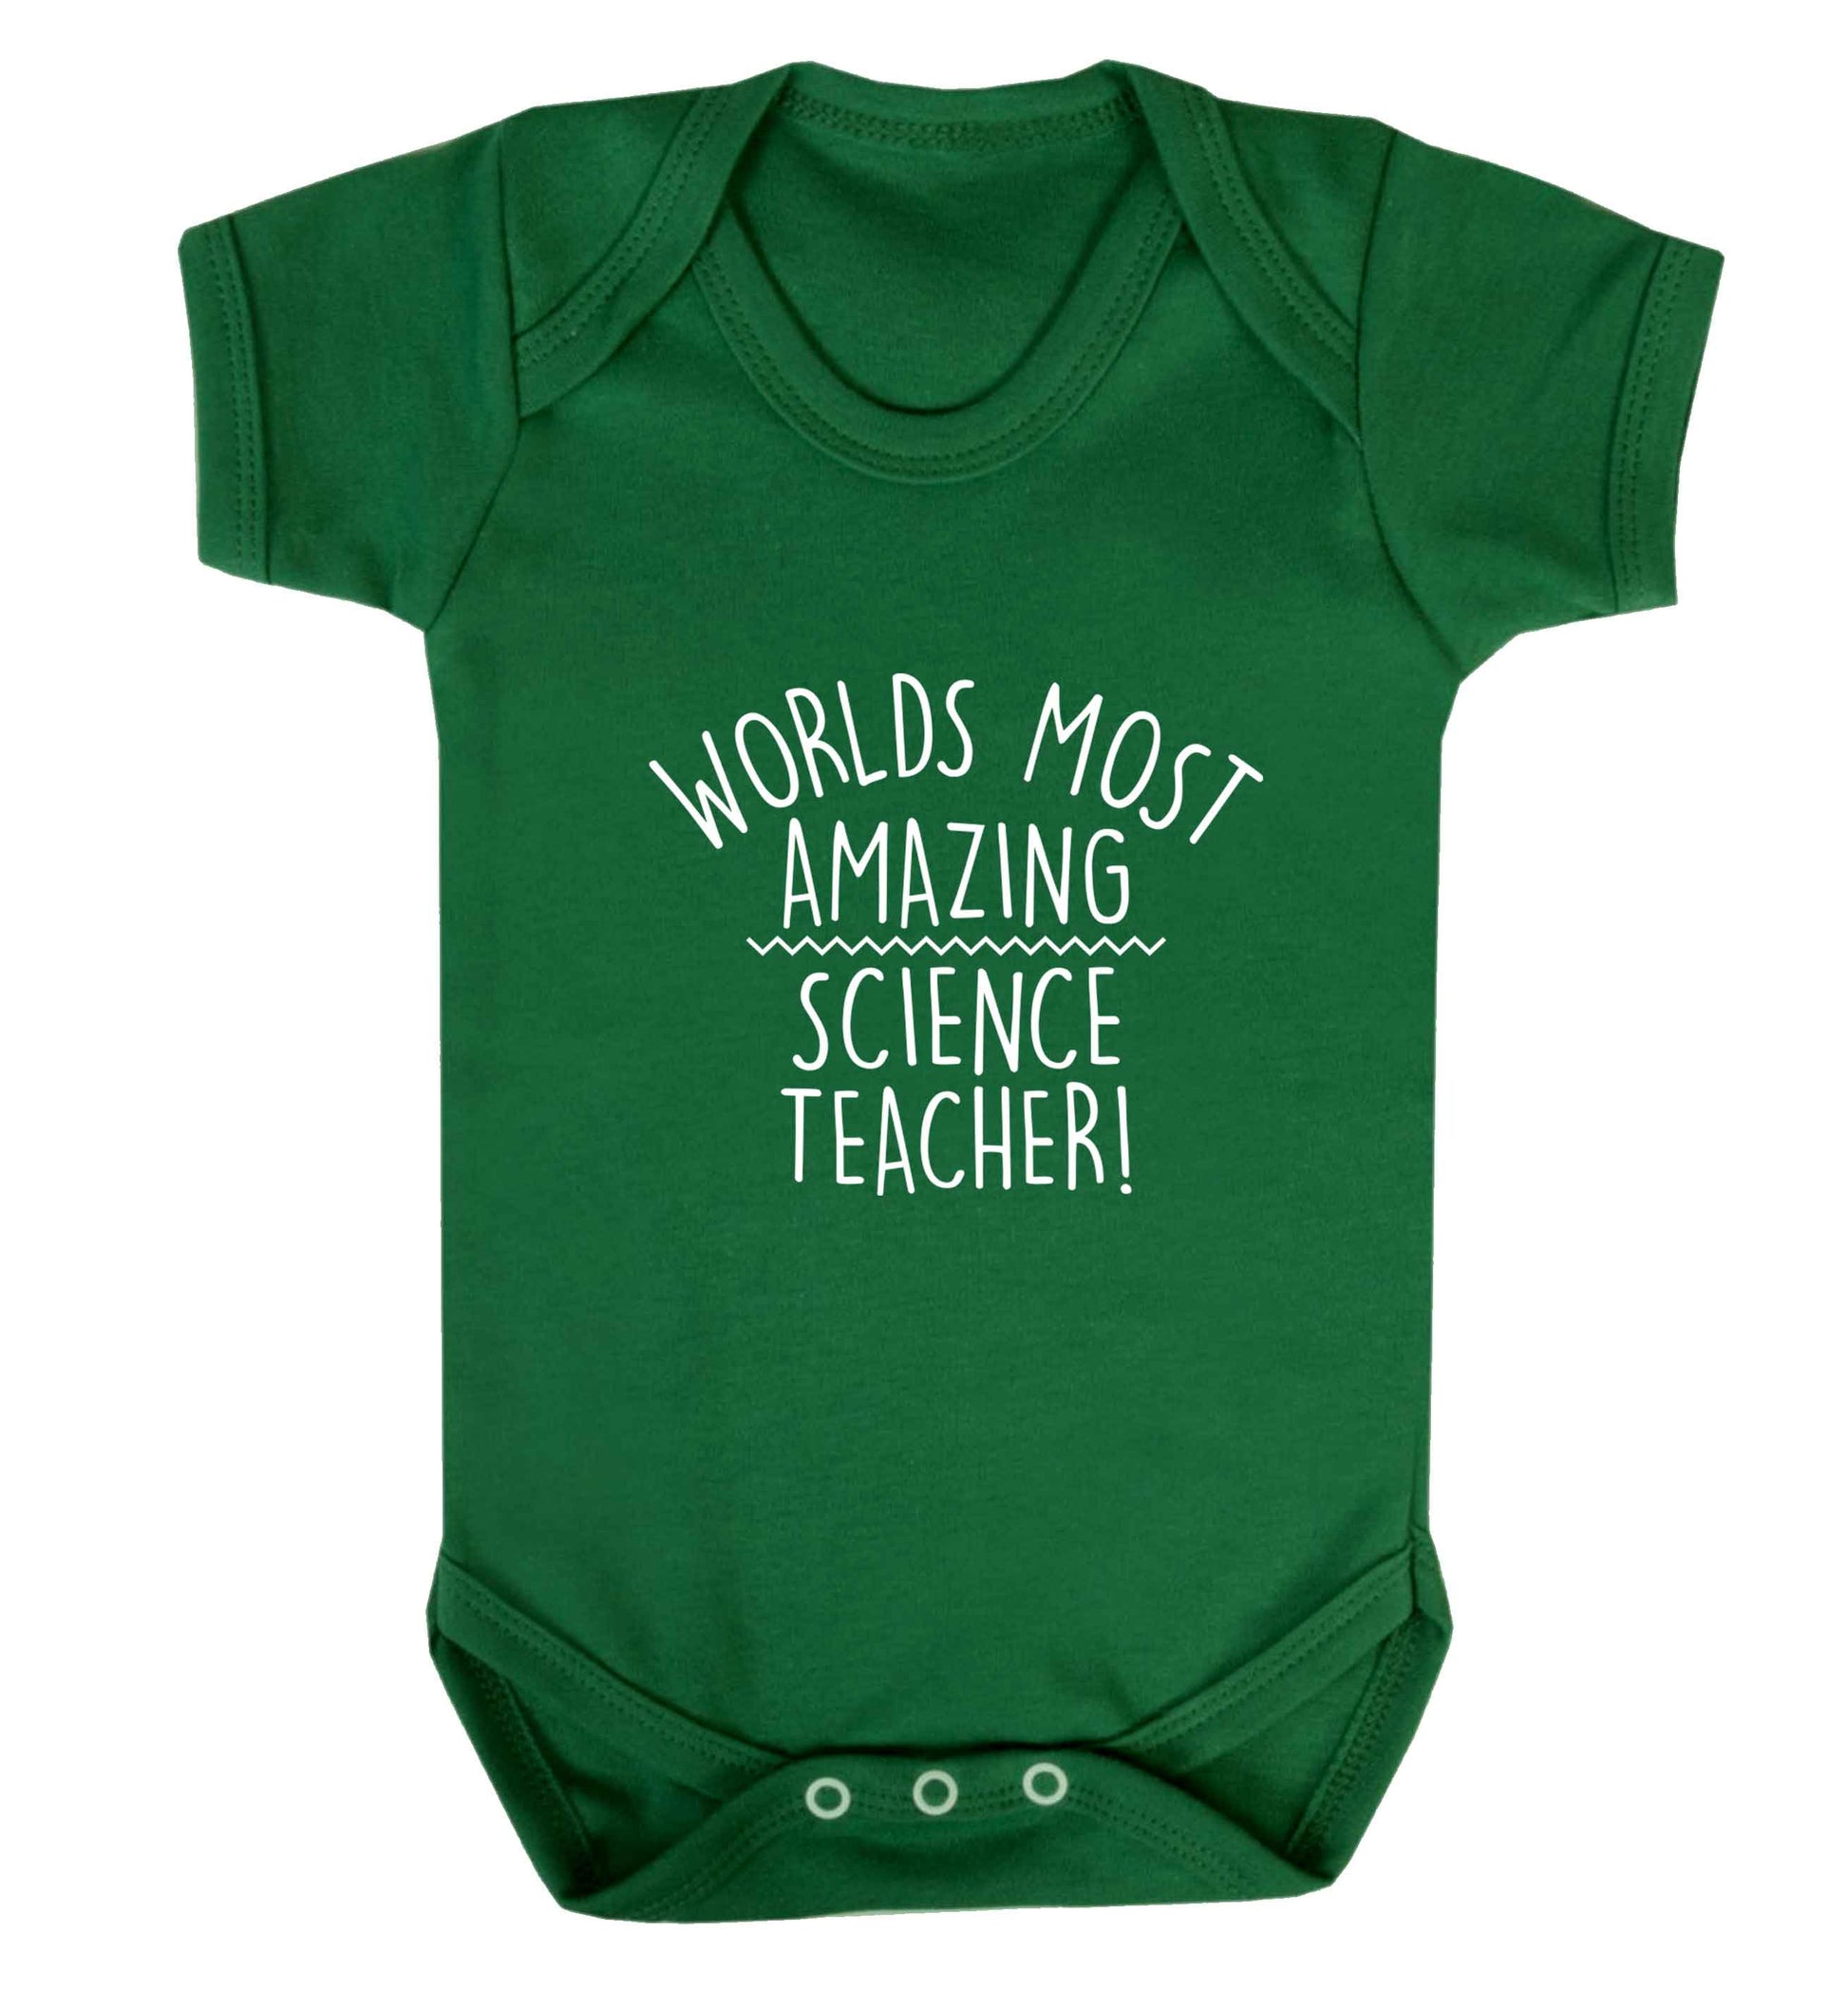 Worlds most amazing science teacher baby vest green 18-24 months